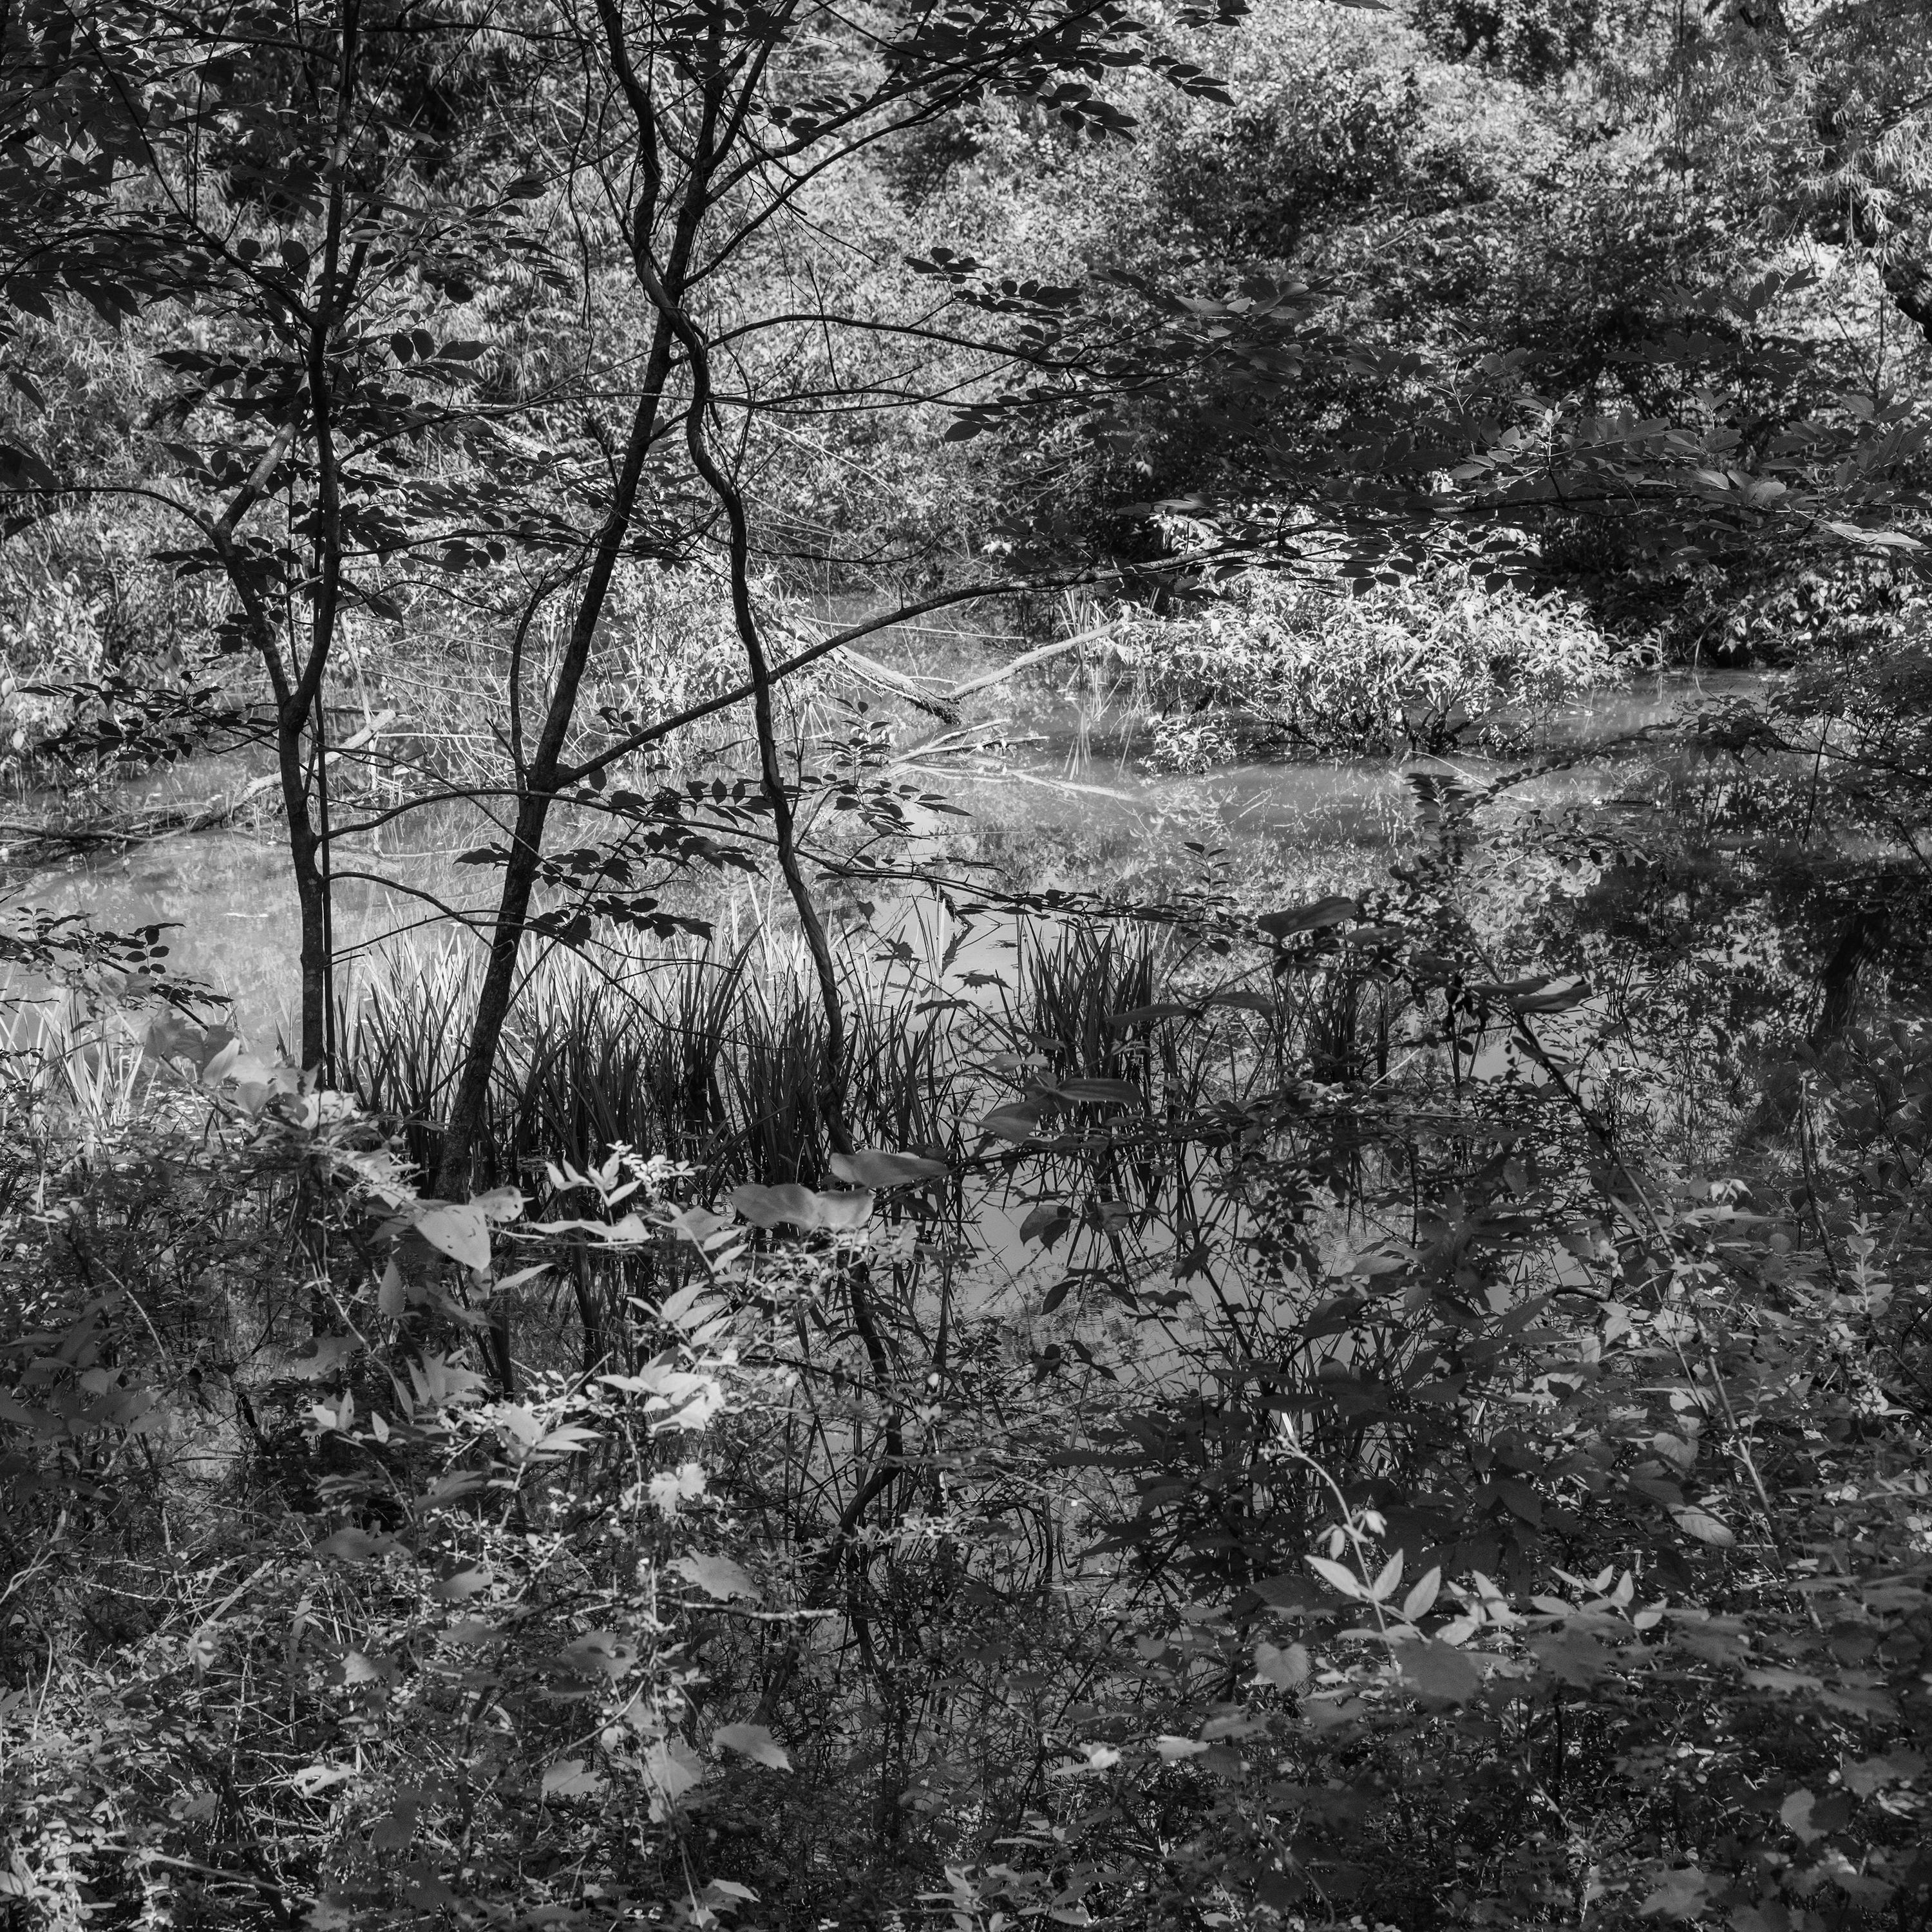 Landscape Photograph Richard Skoonberg - « Un étang éphémère en été » - Photographie de paysage - Eliot Porter